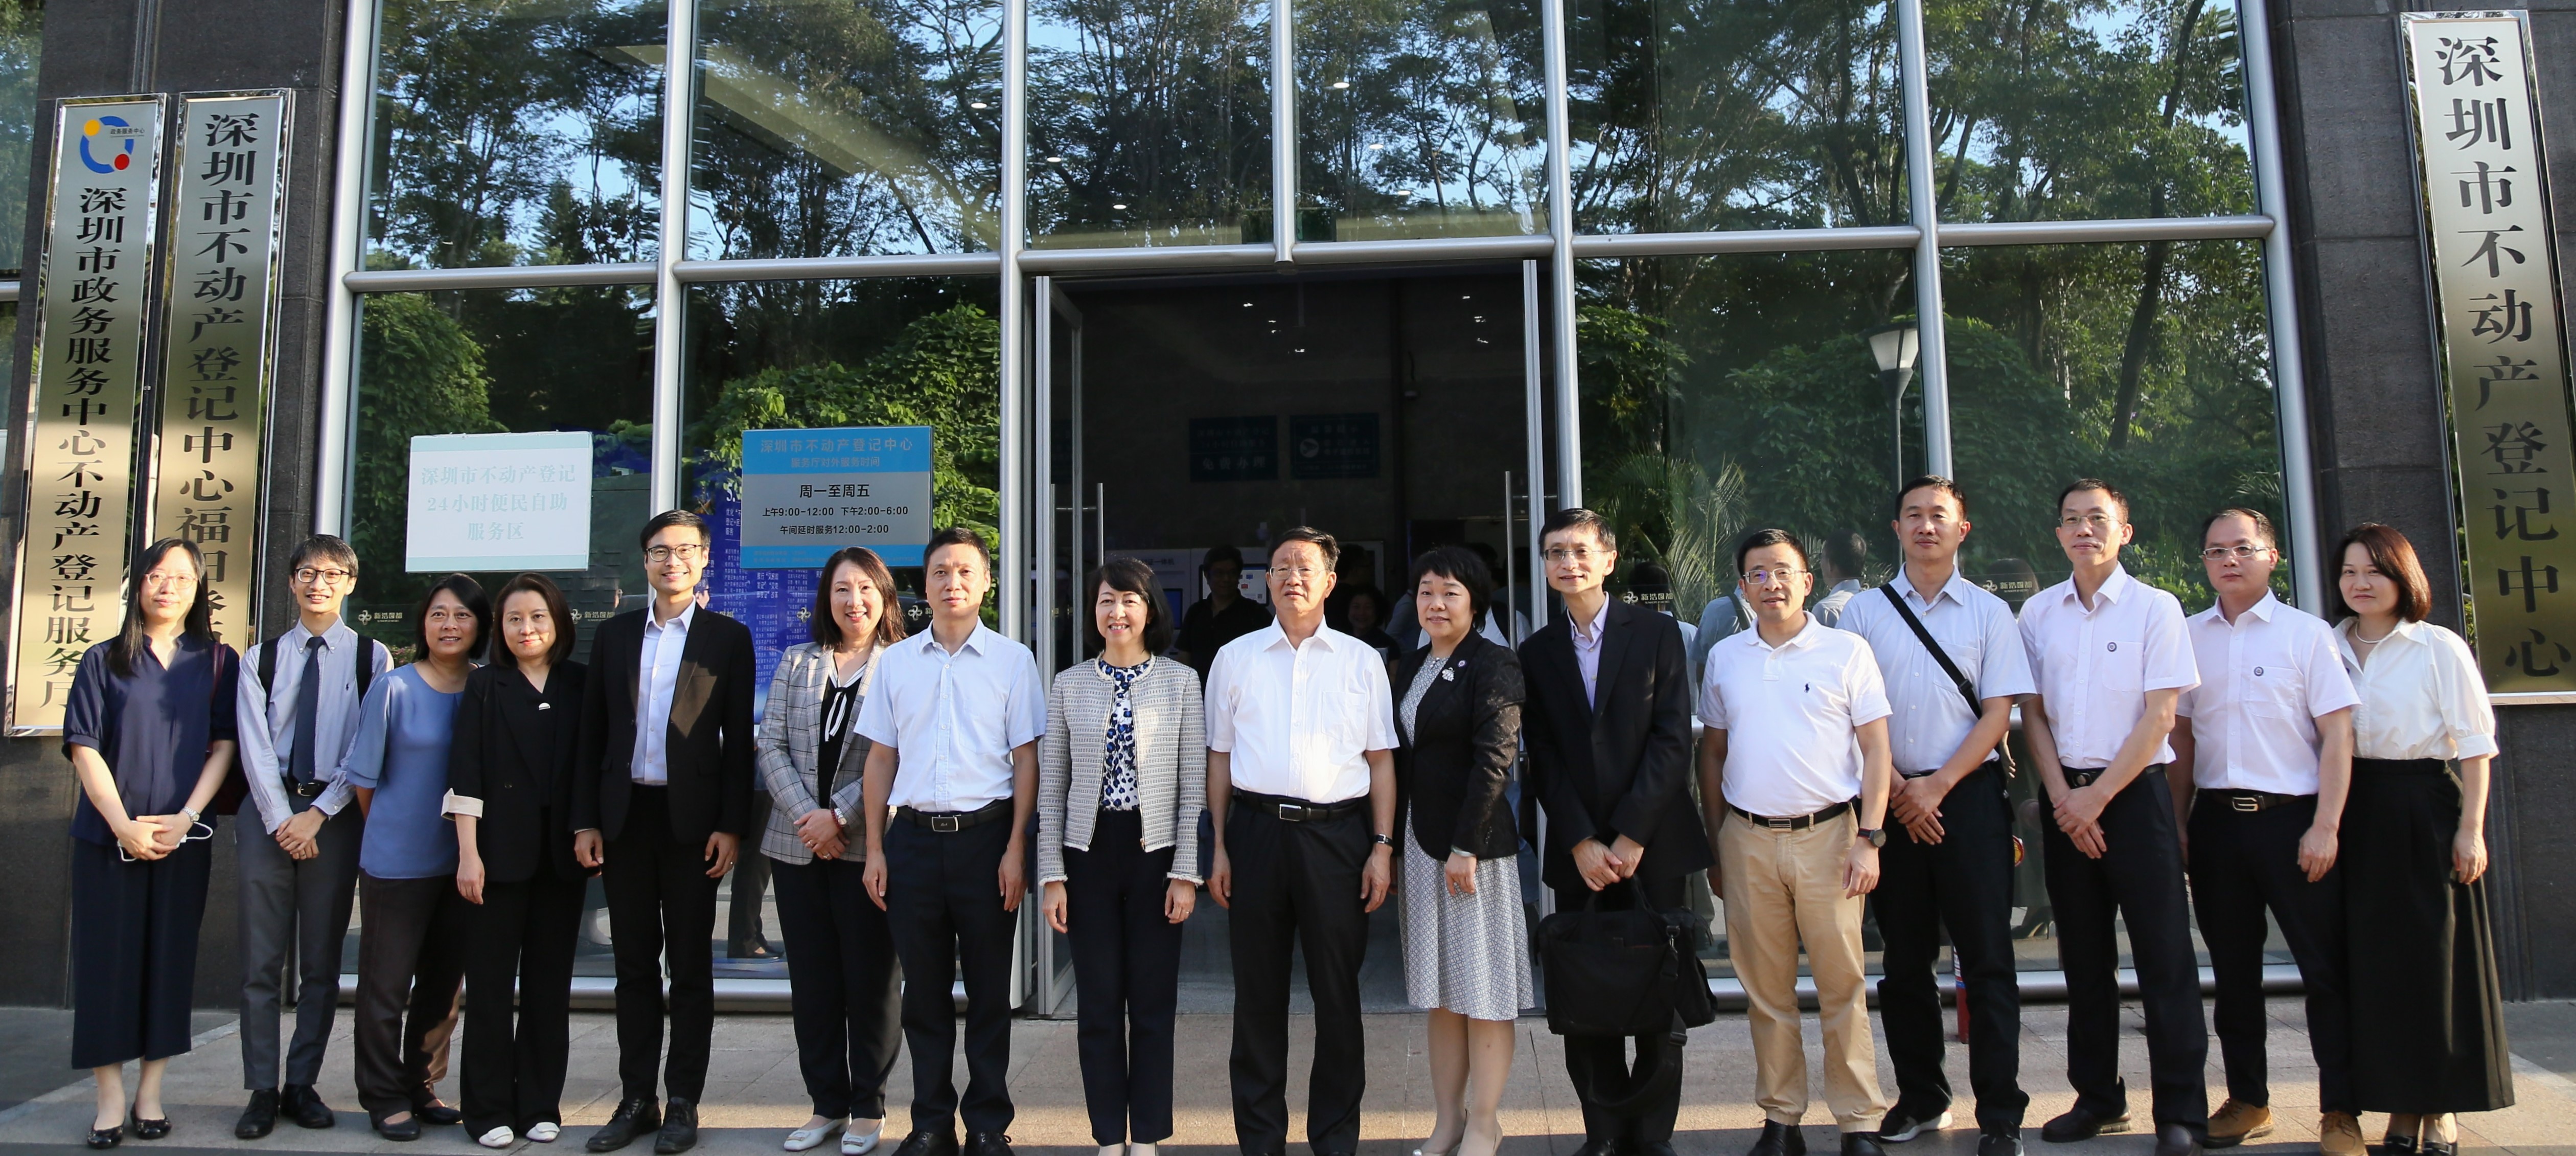 土 地 注 册 处 处 长 谭 惠 仪 女 士 ， JP （ 左 八 ） 率 领 代 表 团 参 观 深 圳 市 不 动 产 登 记 中 心